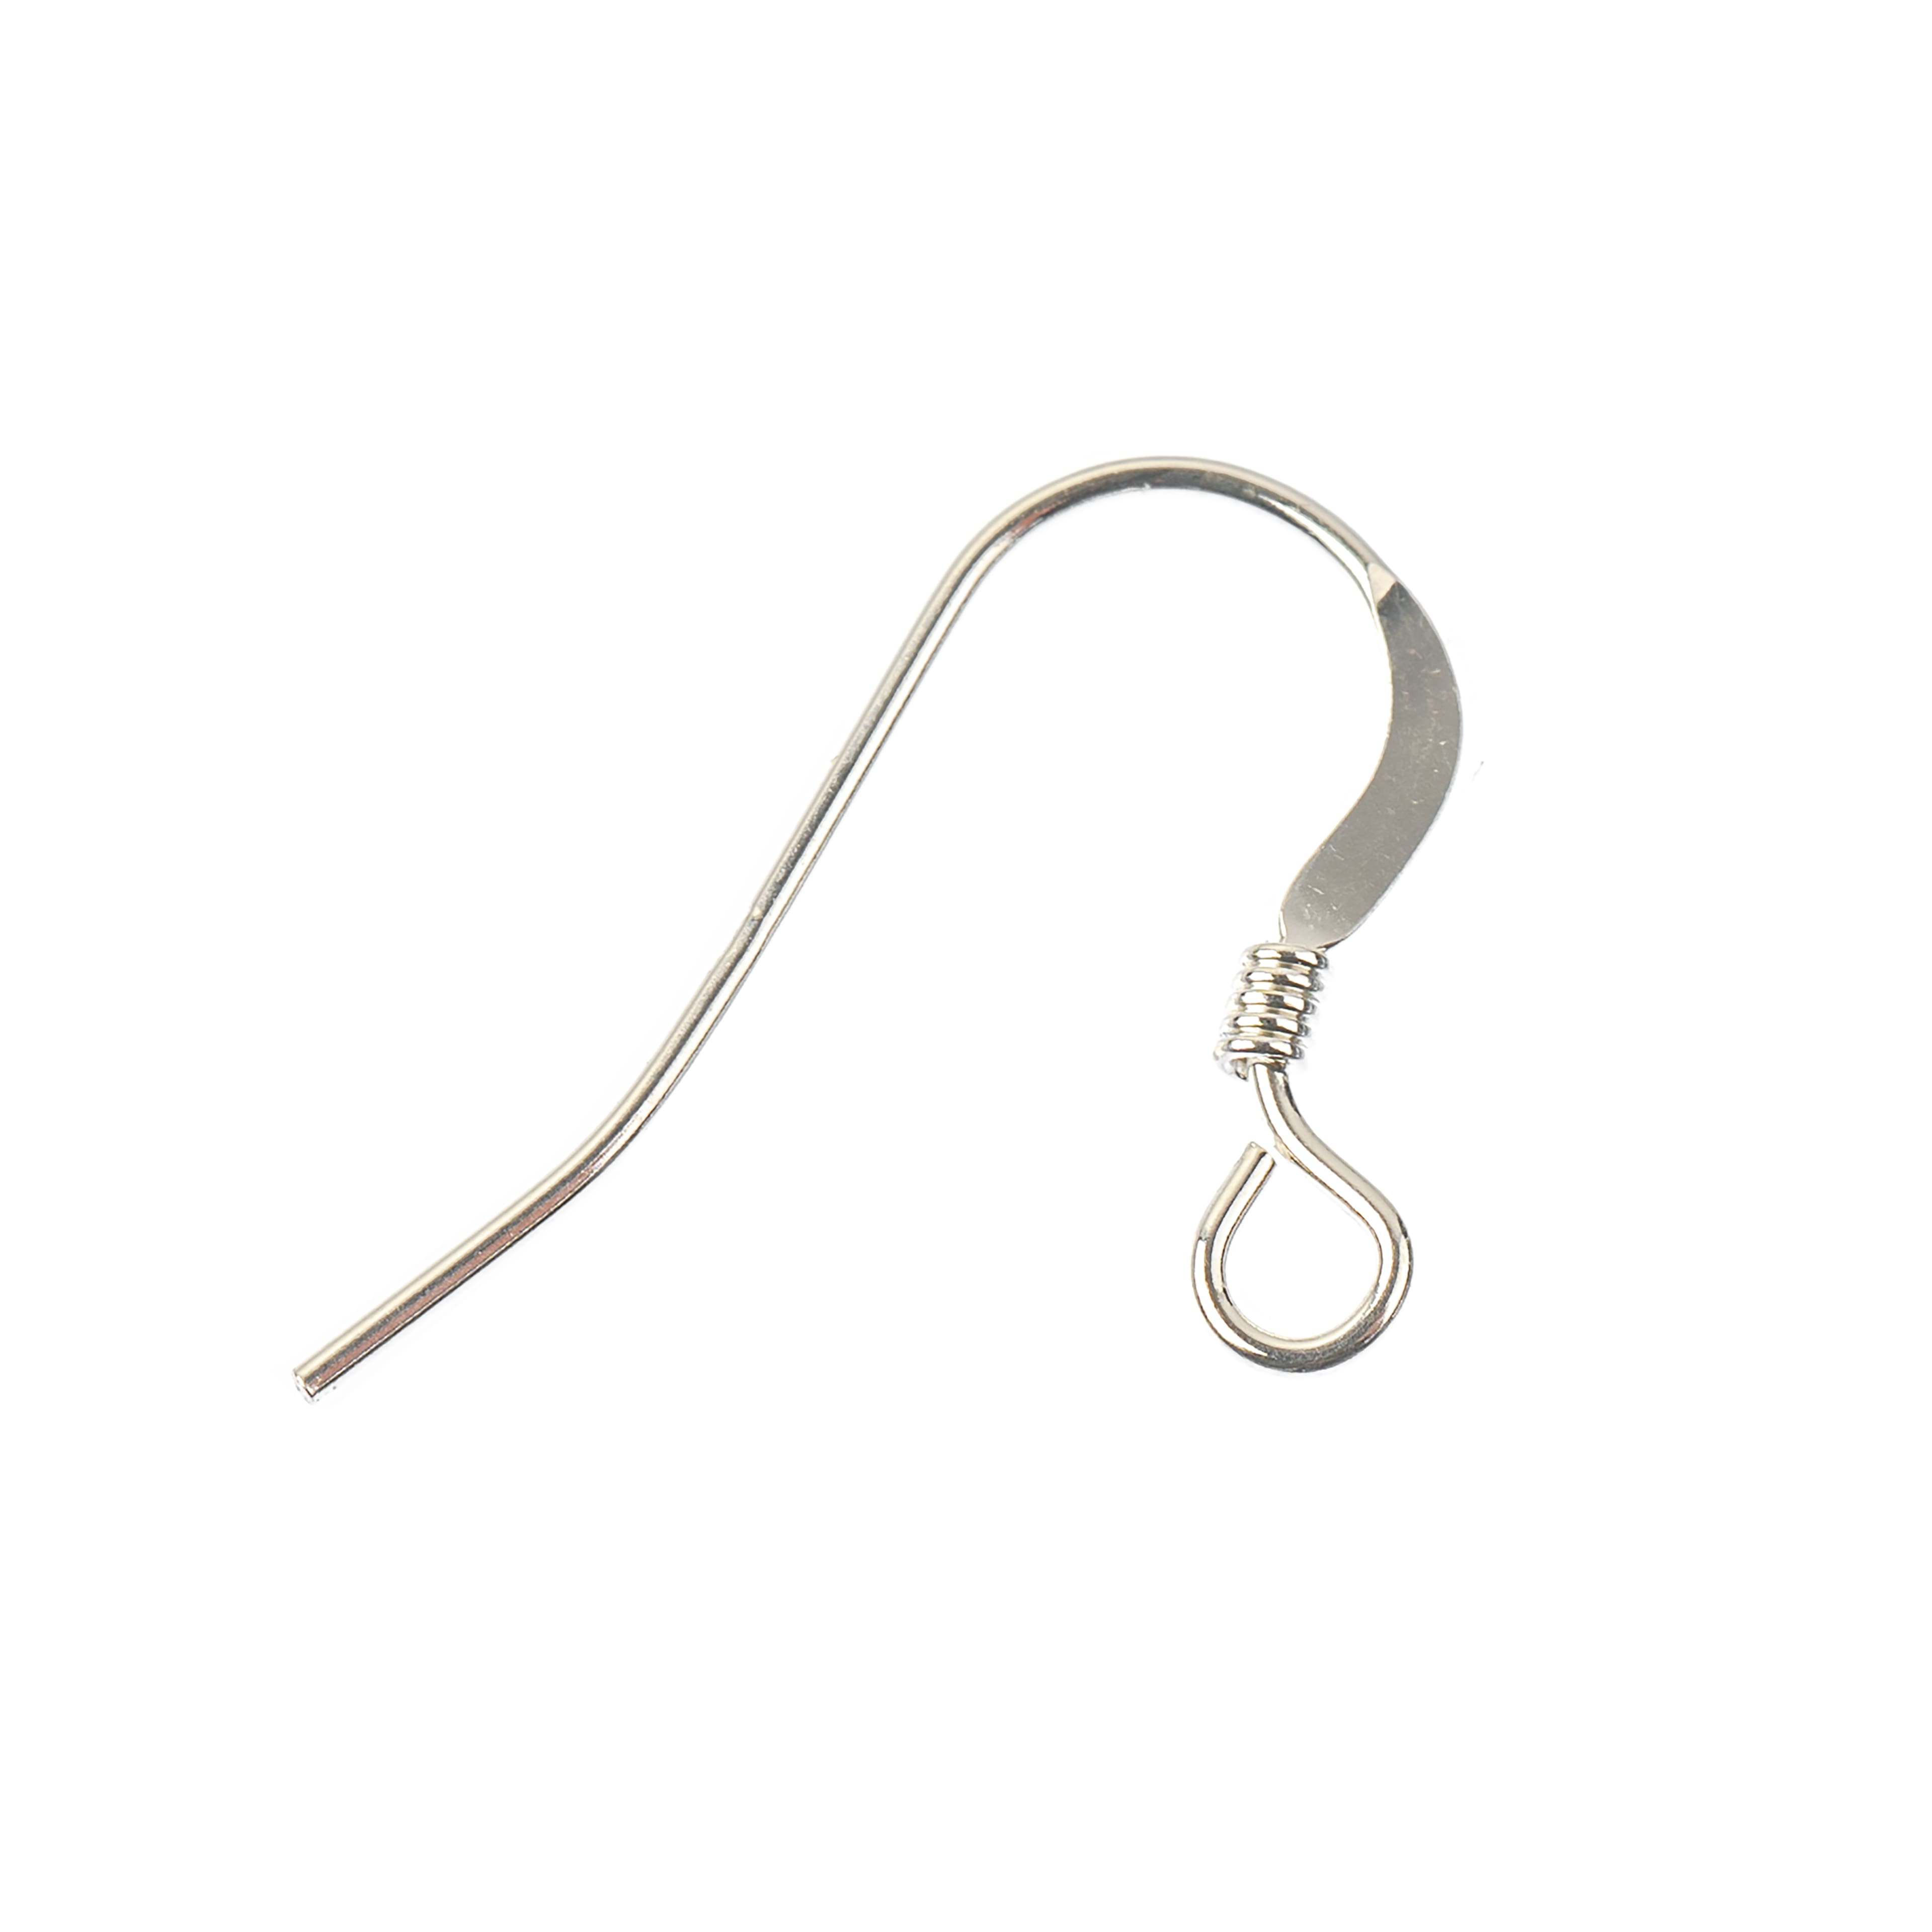 240x Silver Fishhook Earring Hook Ear Stopper for sensitive Ear